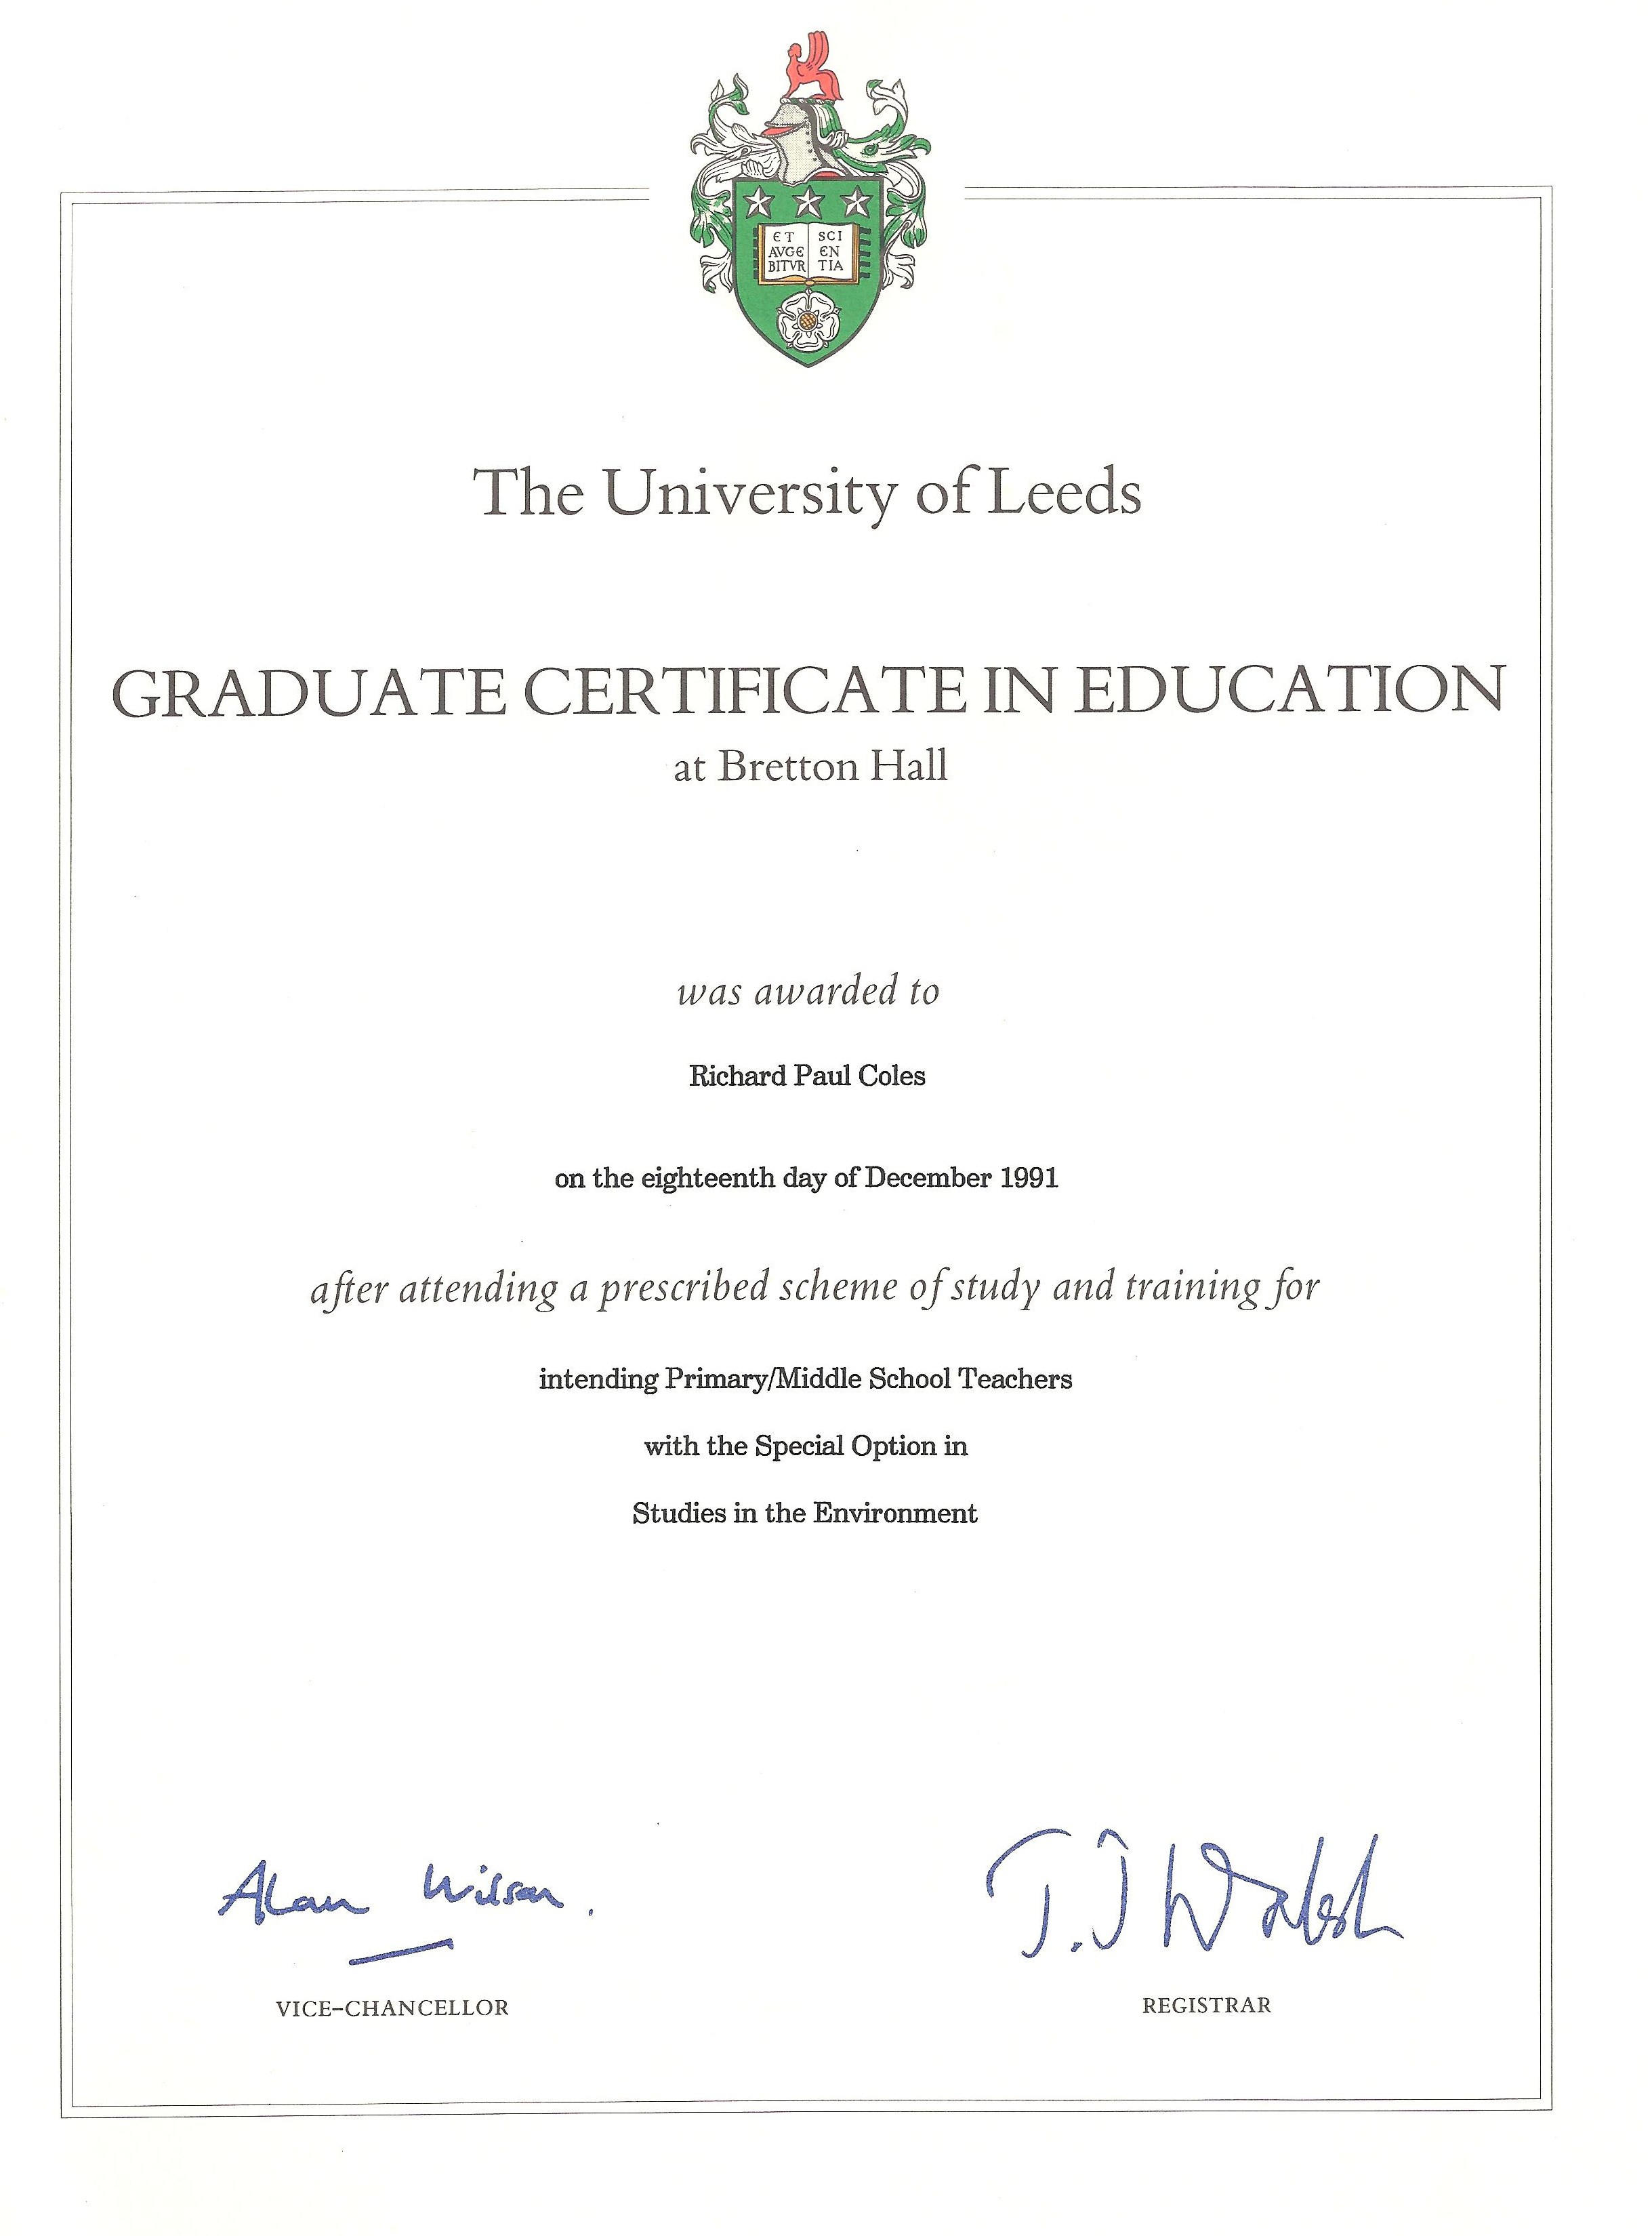 phd certificate uk